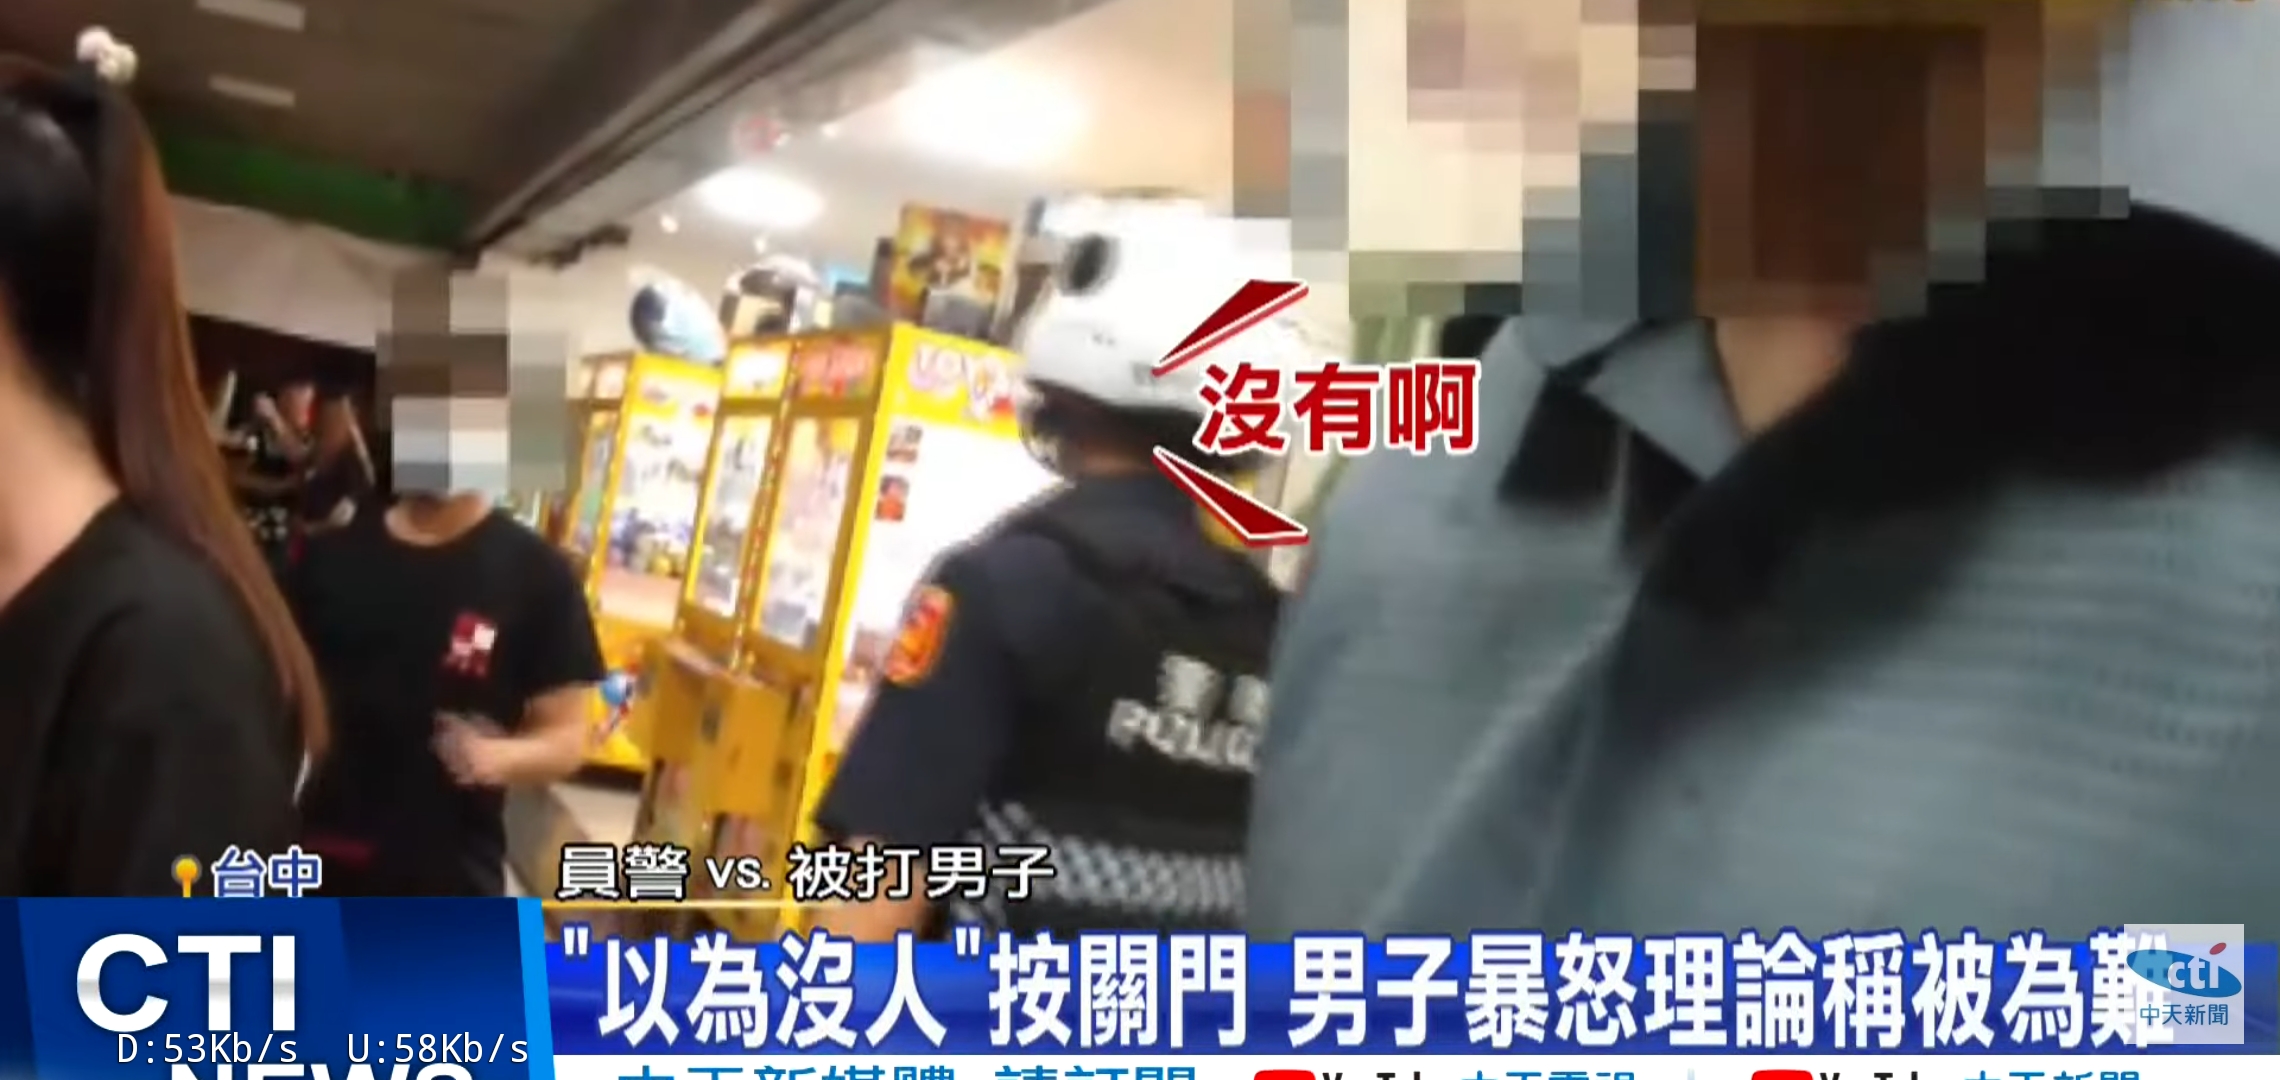 圖https://upload.cc/i1/2022/07/01/K6RAis.jpg, 台中西屯男被電梯夾到爆氣 欺負阿伯